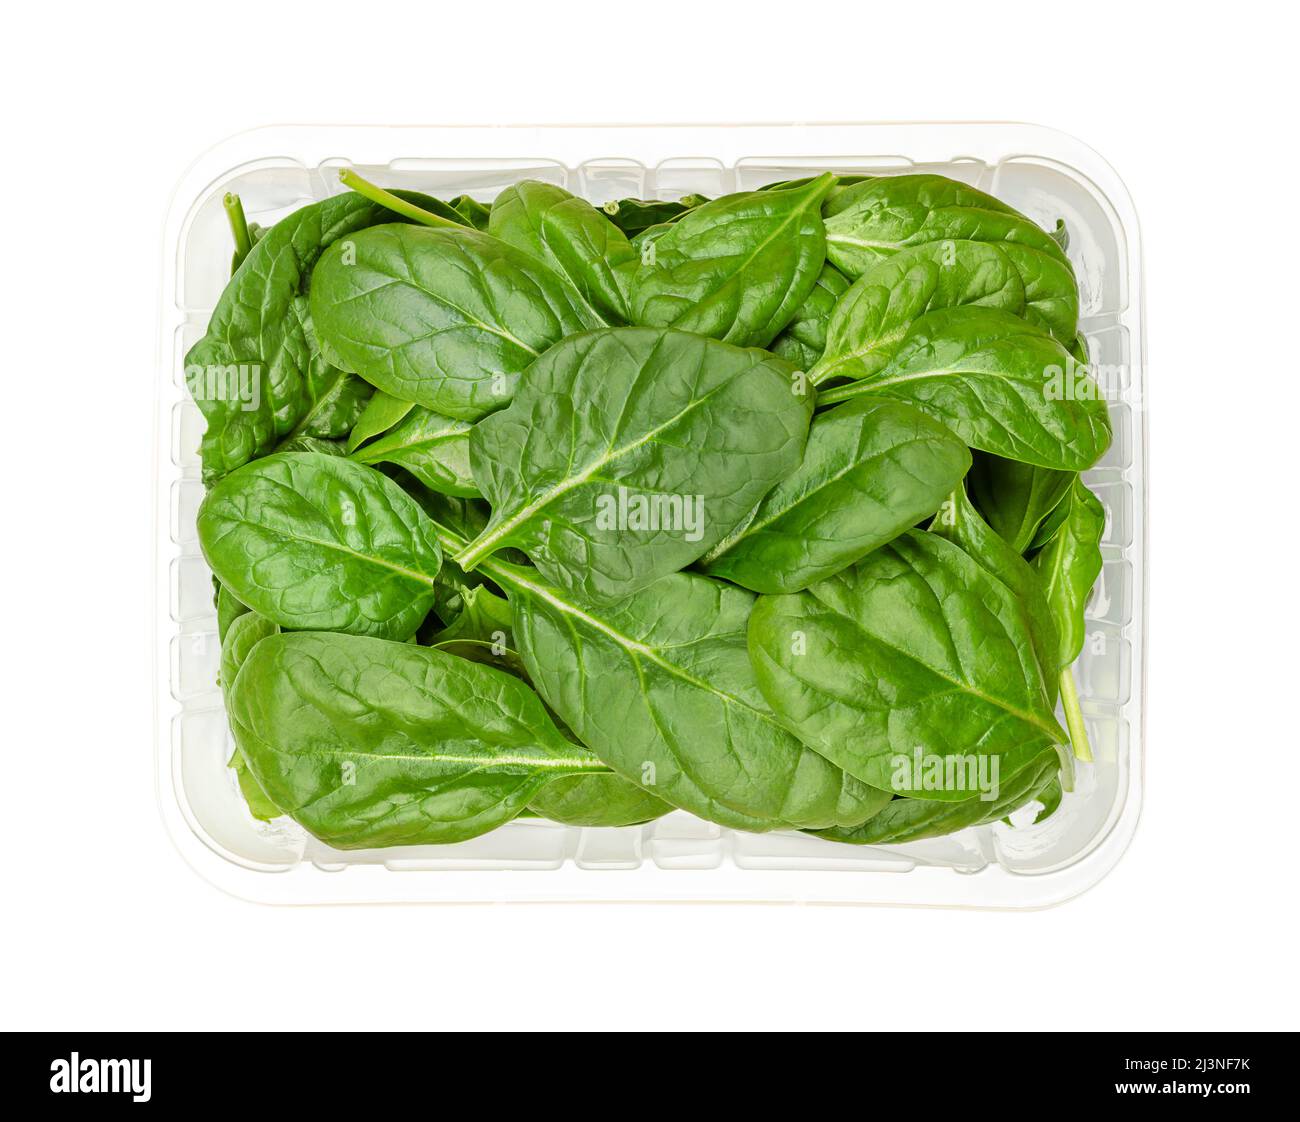 Junge Spinatblätter in einem Plastikbehälter. Frisch gepflückte und rohe Spinacia oleracea, grünes Blattgemüse, reich an Vitamin K.. Stockfoto